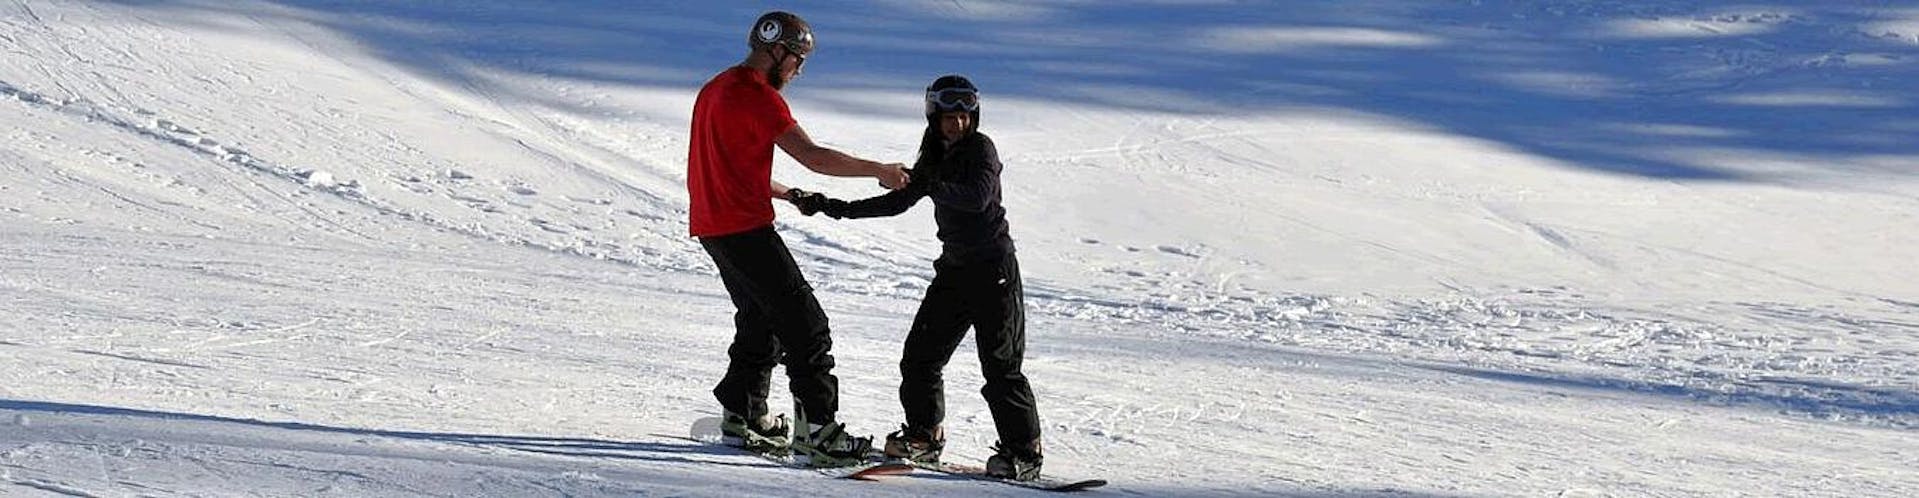 Lezioni private di snowboard per adulti per tutti i livelli.